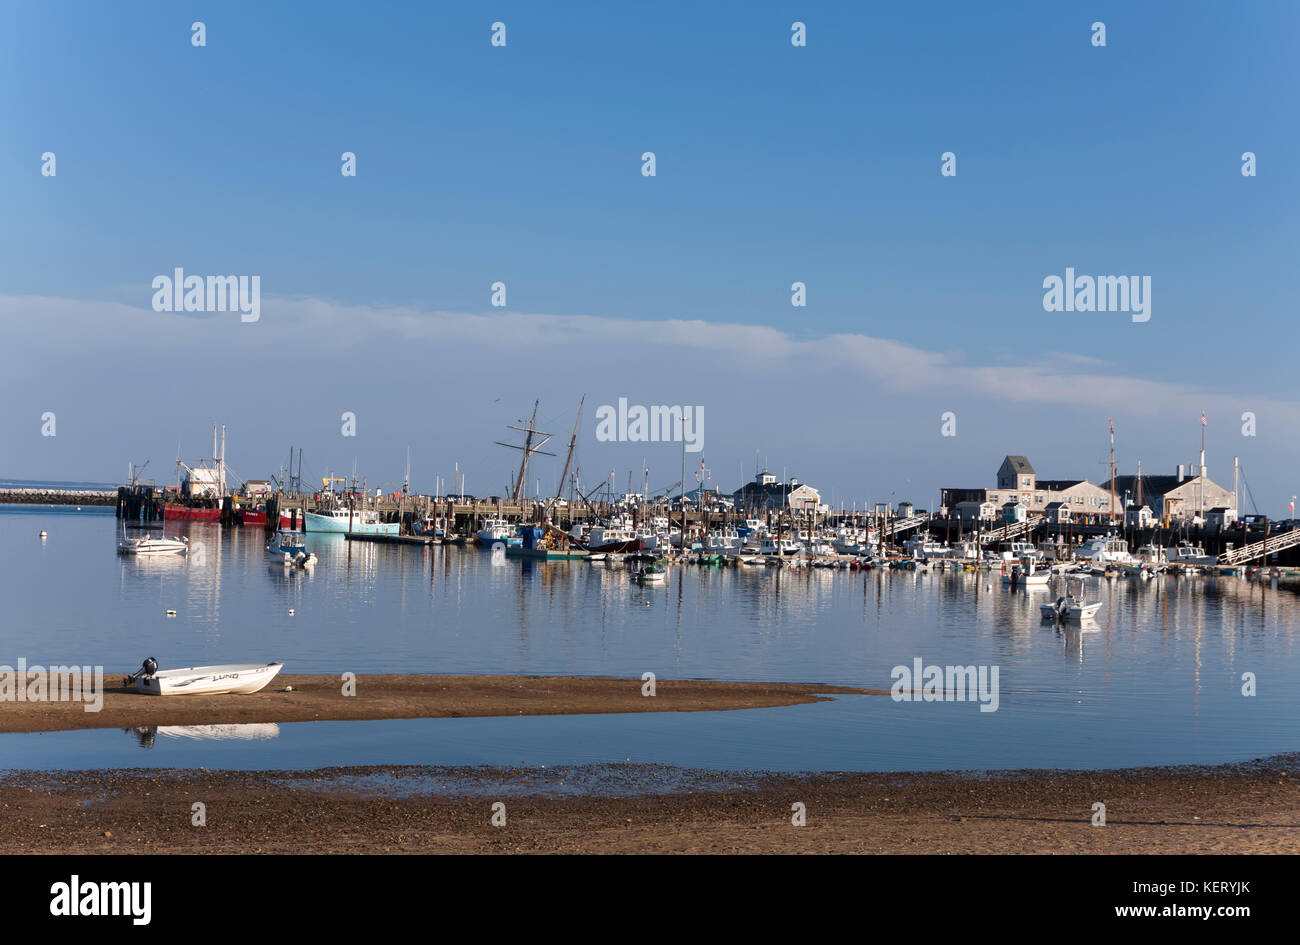 Boot bei Ebbe (und bei Flut) im Hafen - Bild 2 von 2 Fotos. Stockfoto